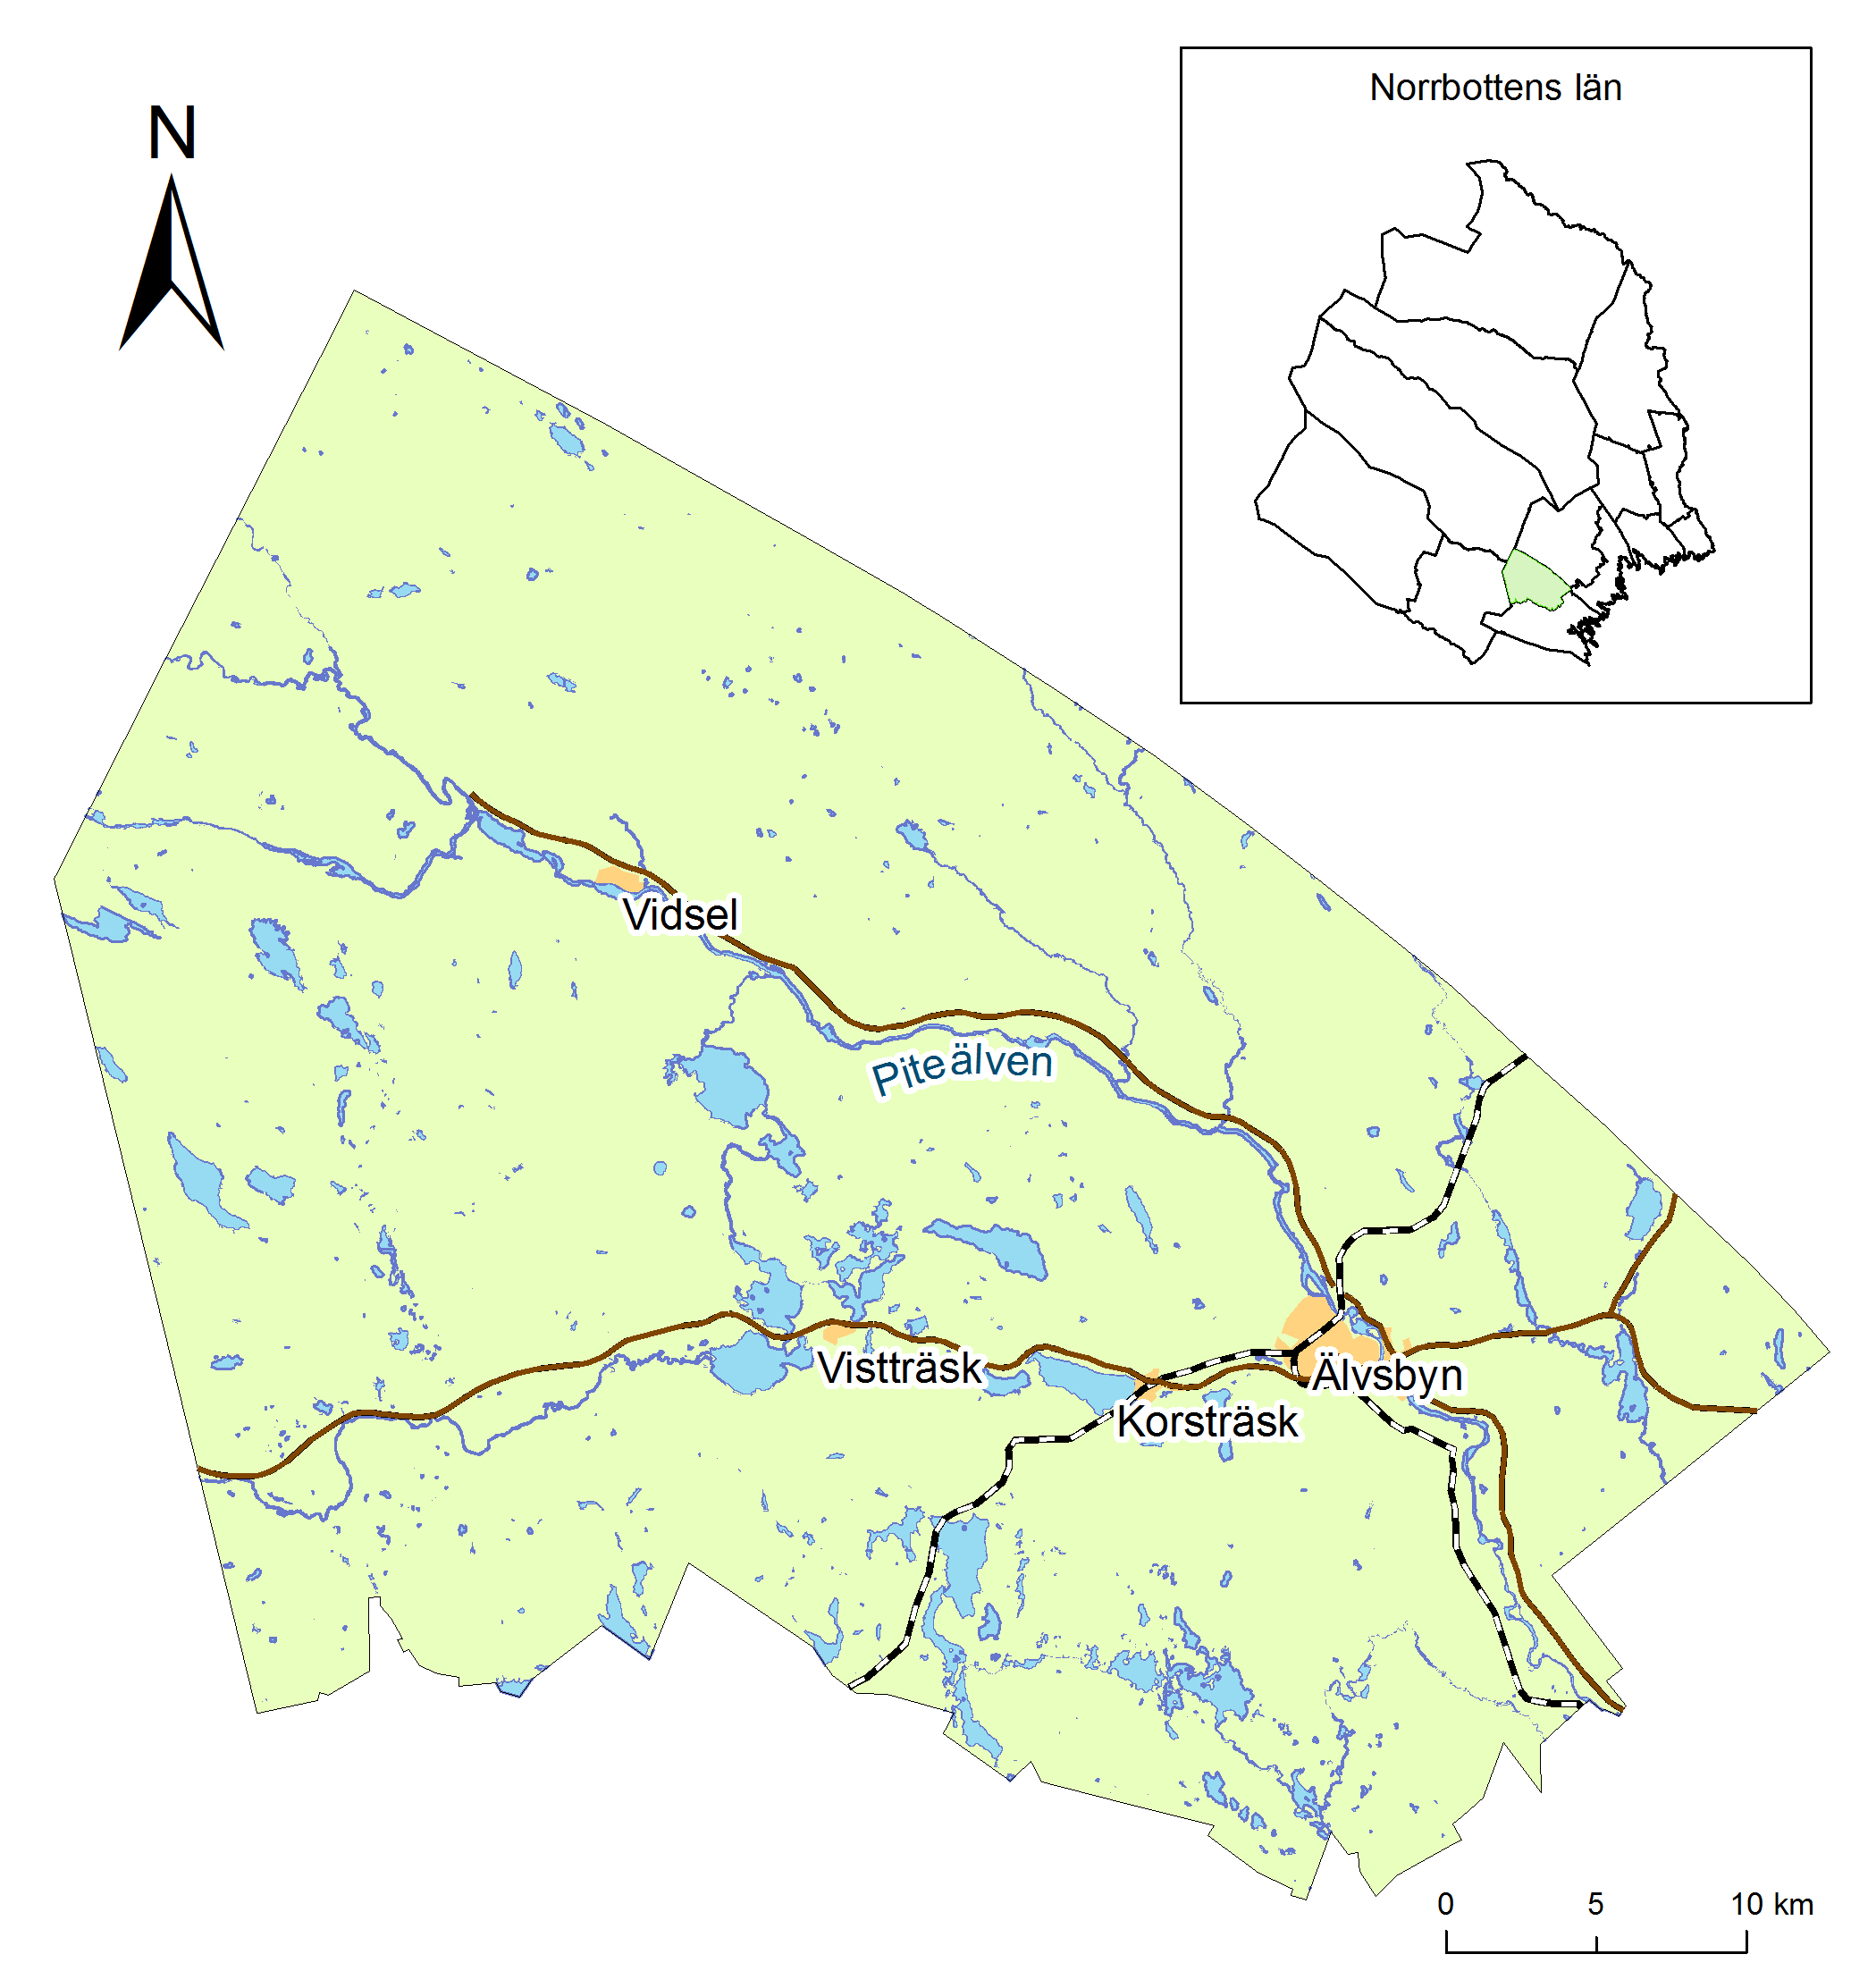 2 Älvsbyns kommun Älvsbyns kommun har en areal på 1 713 kvadratkilometer och är därmed Norrbottens näst minsta kommun. Här bor cirka 8300 personer, varav ungefär 5000 i tätorten Älvsbyn.